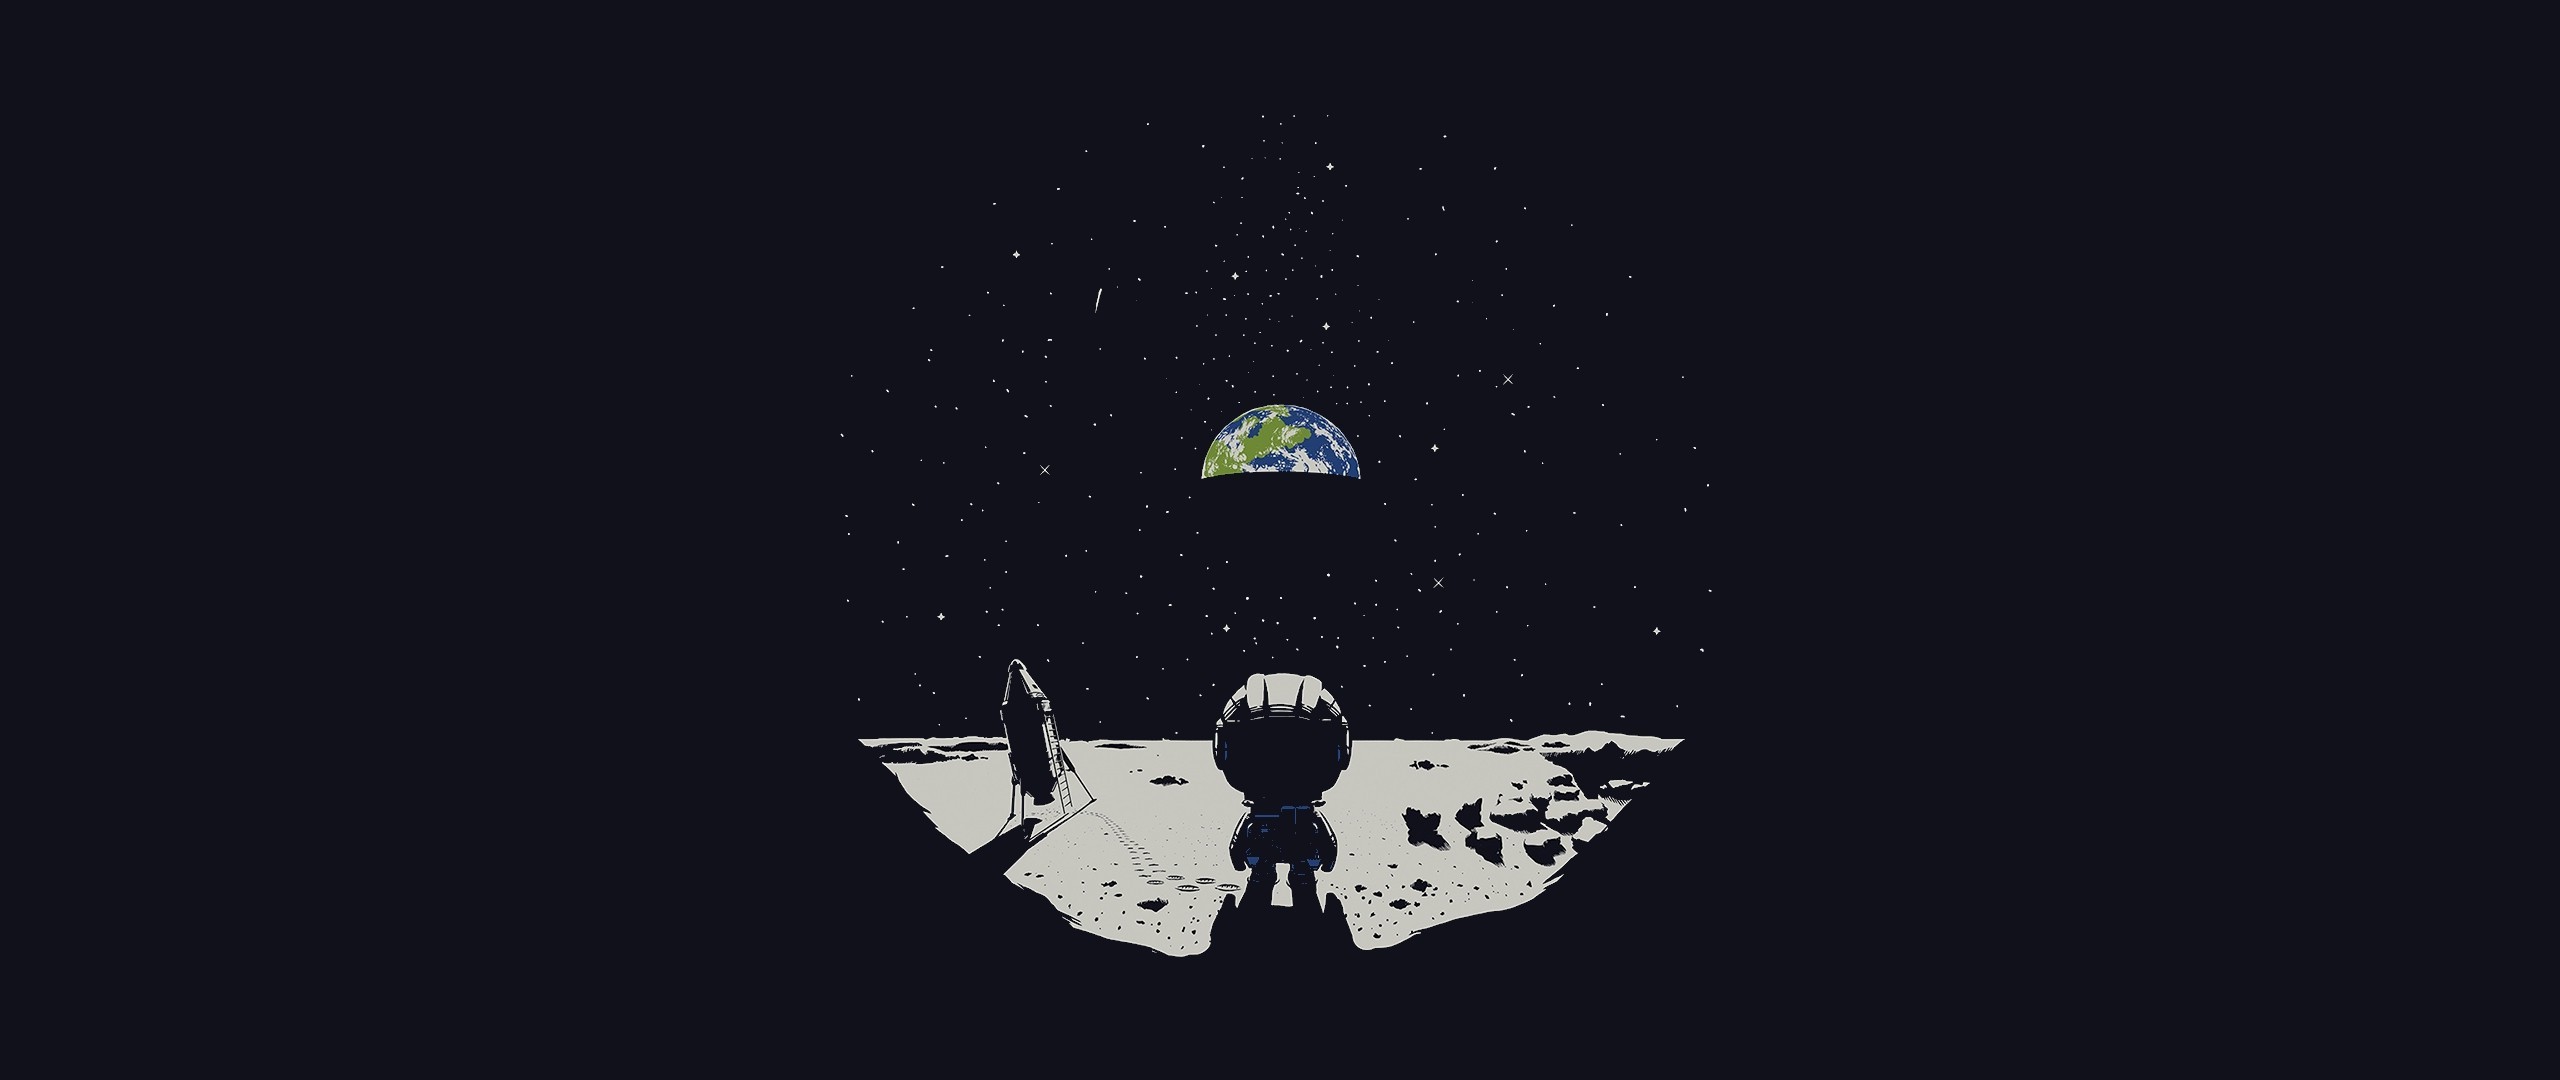 ultrawide, Space, Moon, Earth Wallpaper